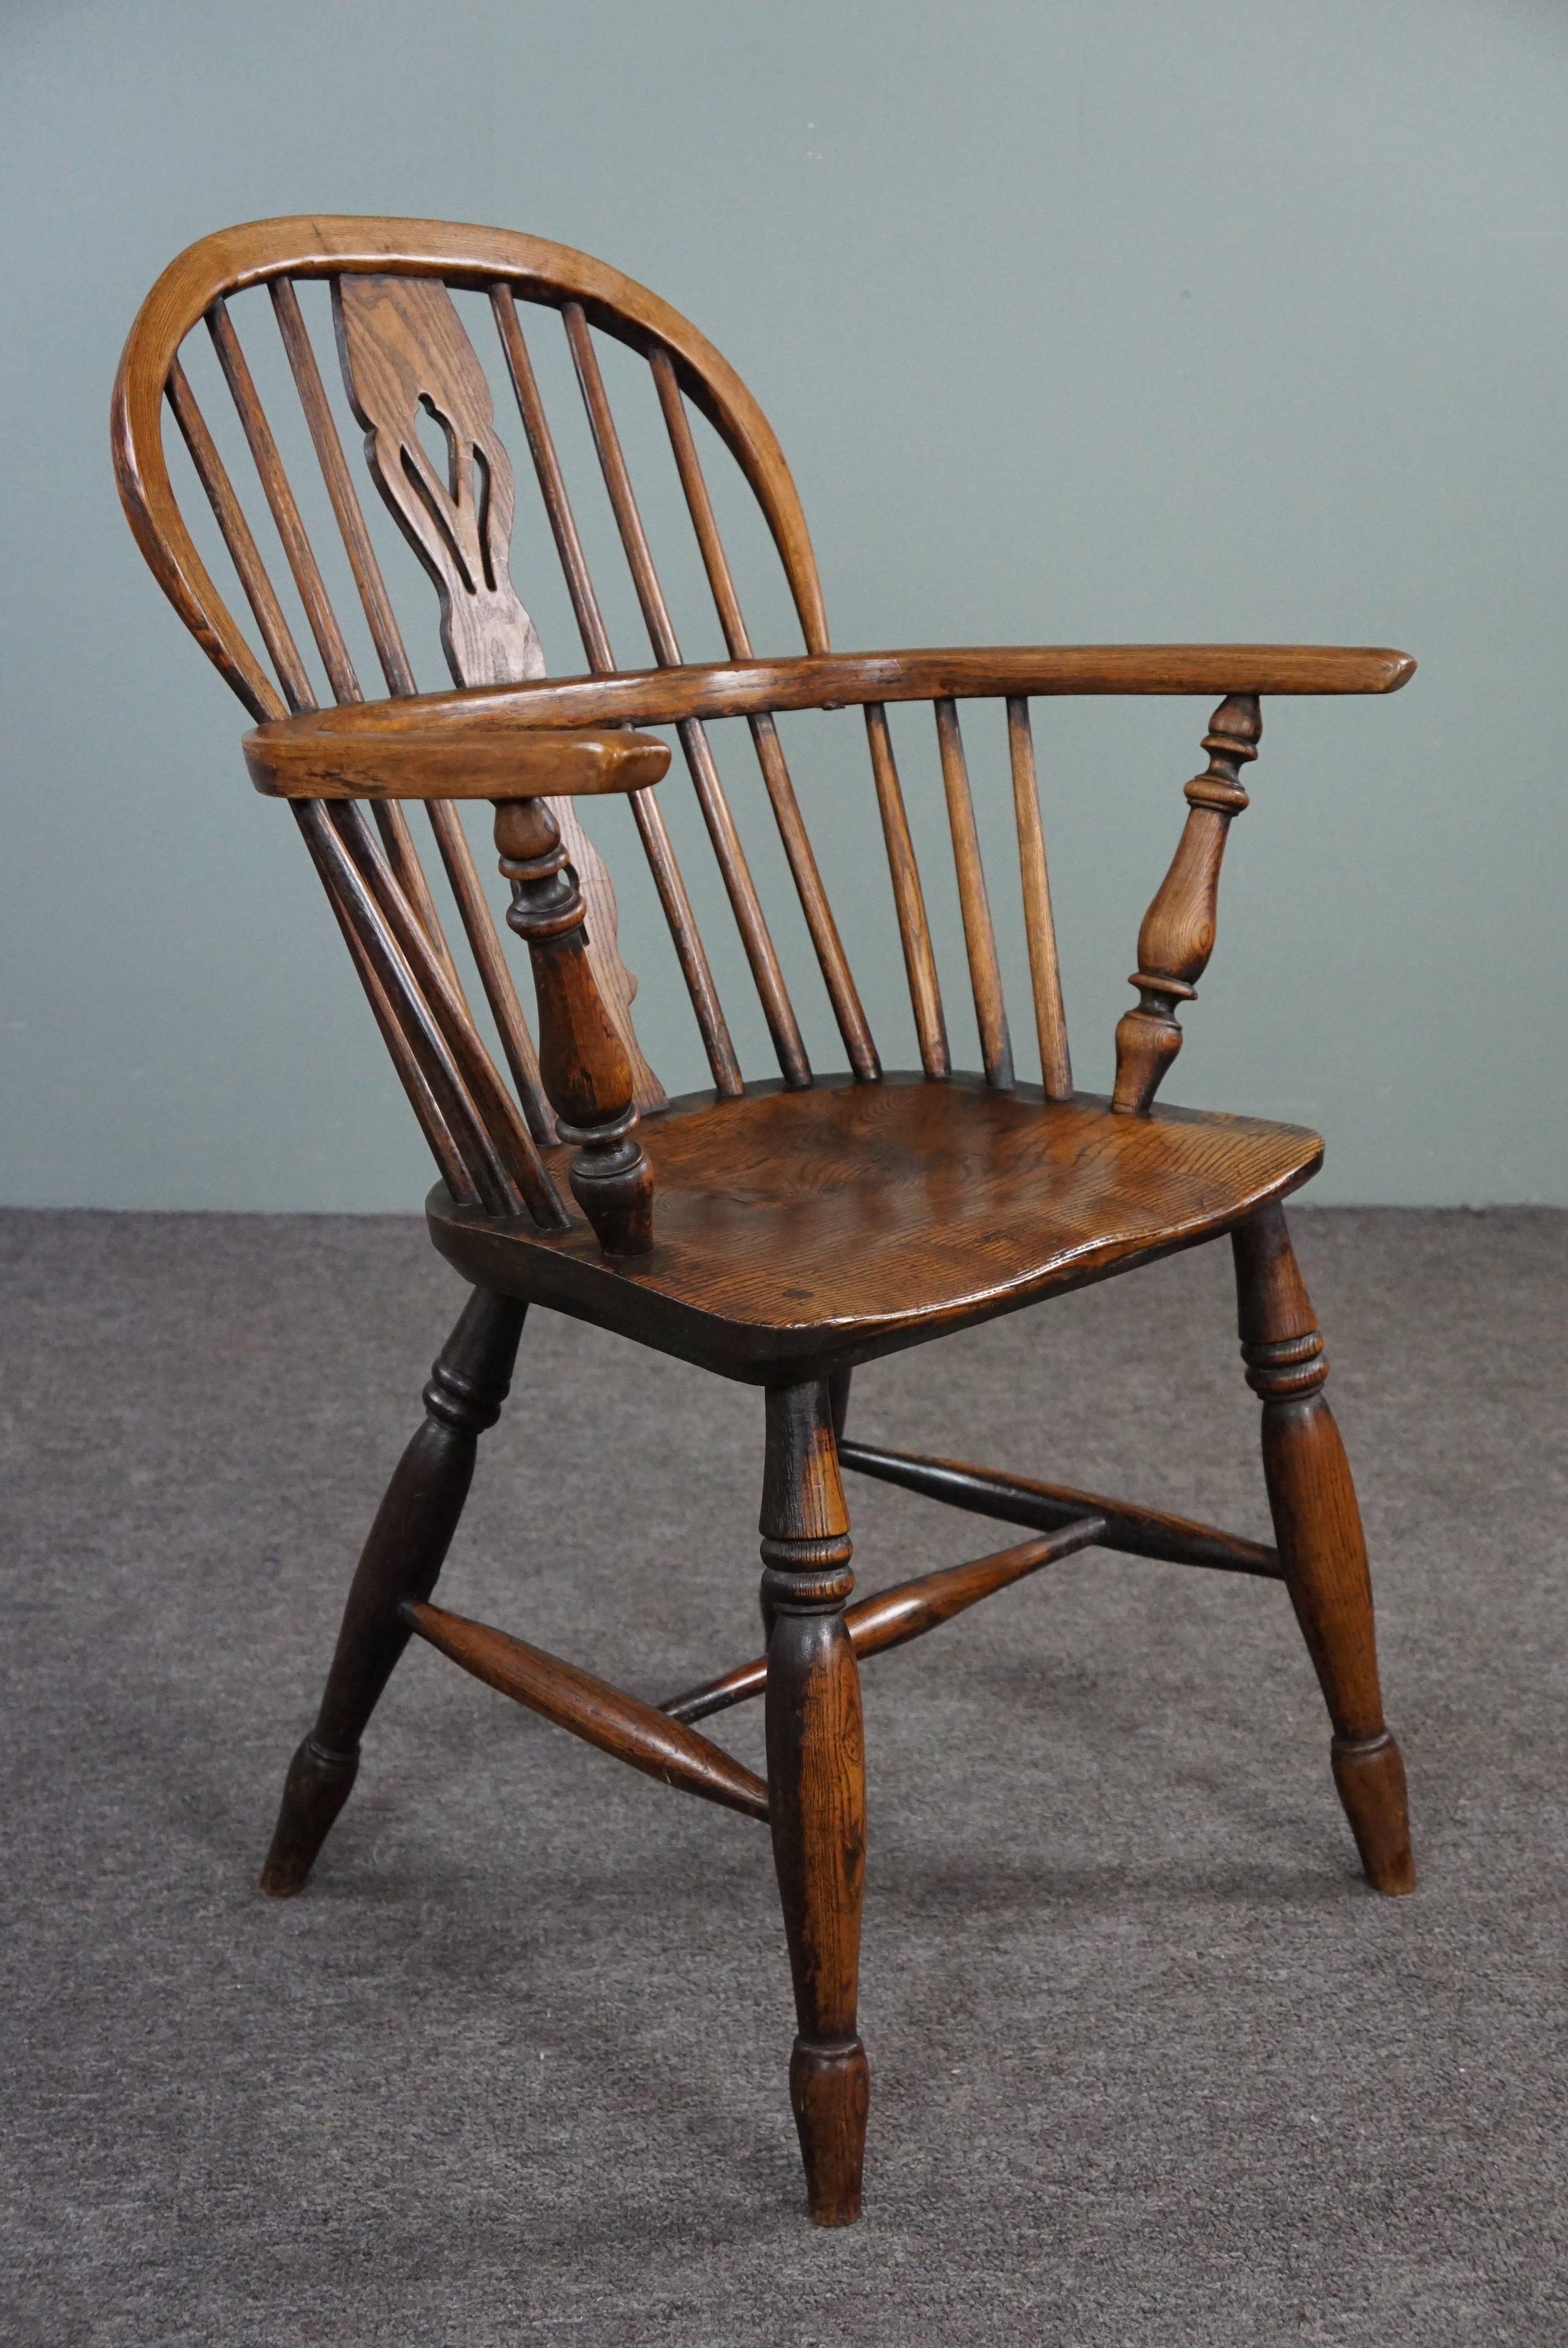 Angeboten wird dieser schöne antike Sessel aus Massivholz mit einer atemberaubenden Patina.

Dieser sehr schöne antike englische Windsor-Stuhl mit niedriger Rückenlehne aus dem frühen 18. Jahrhundert hat eine vergitterte Rückenlehne und einen schön